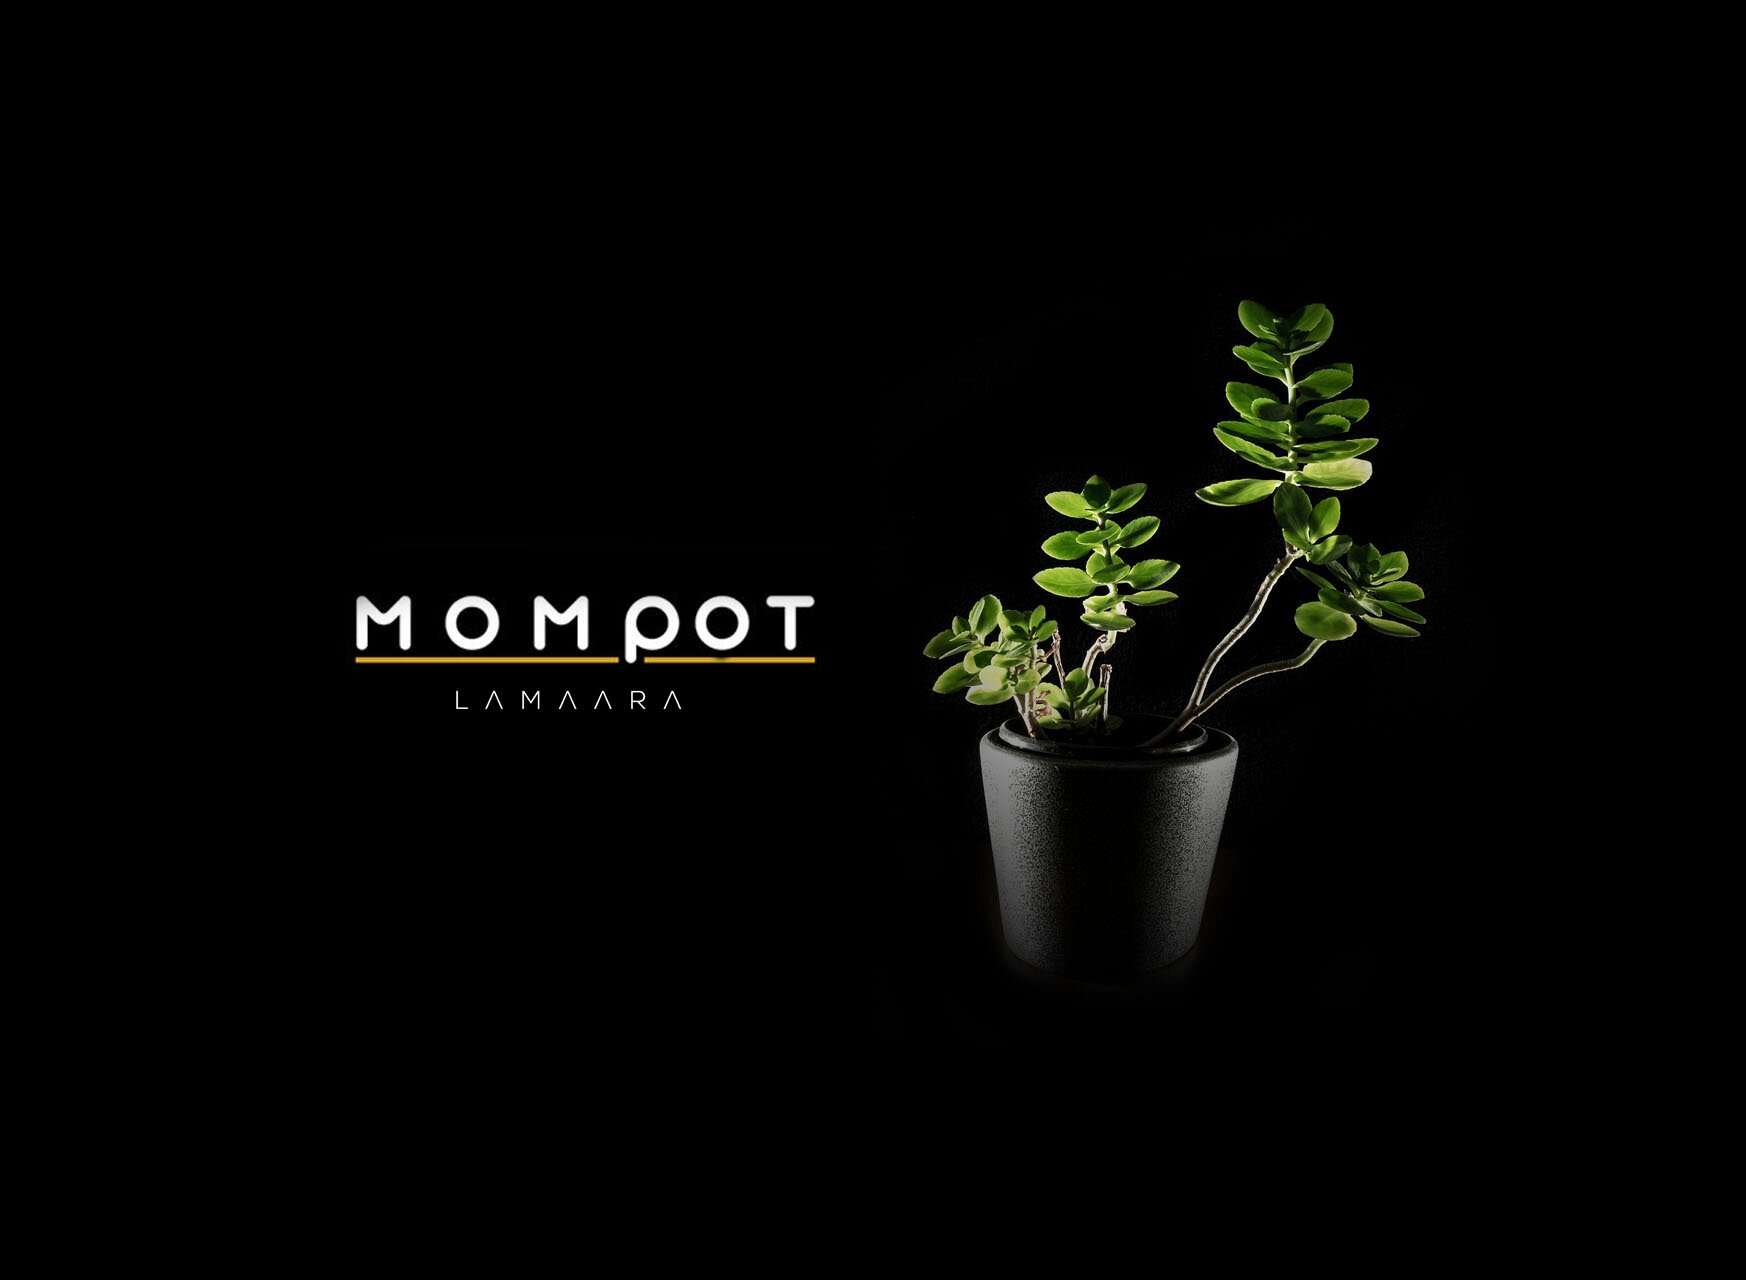 Mompot